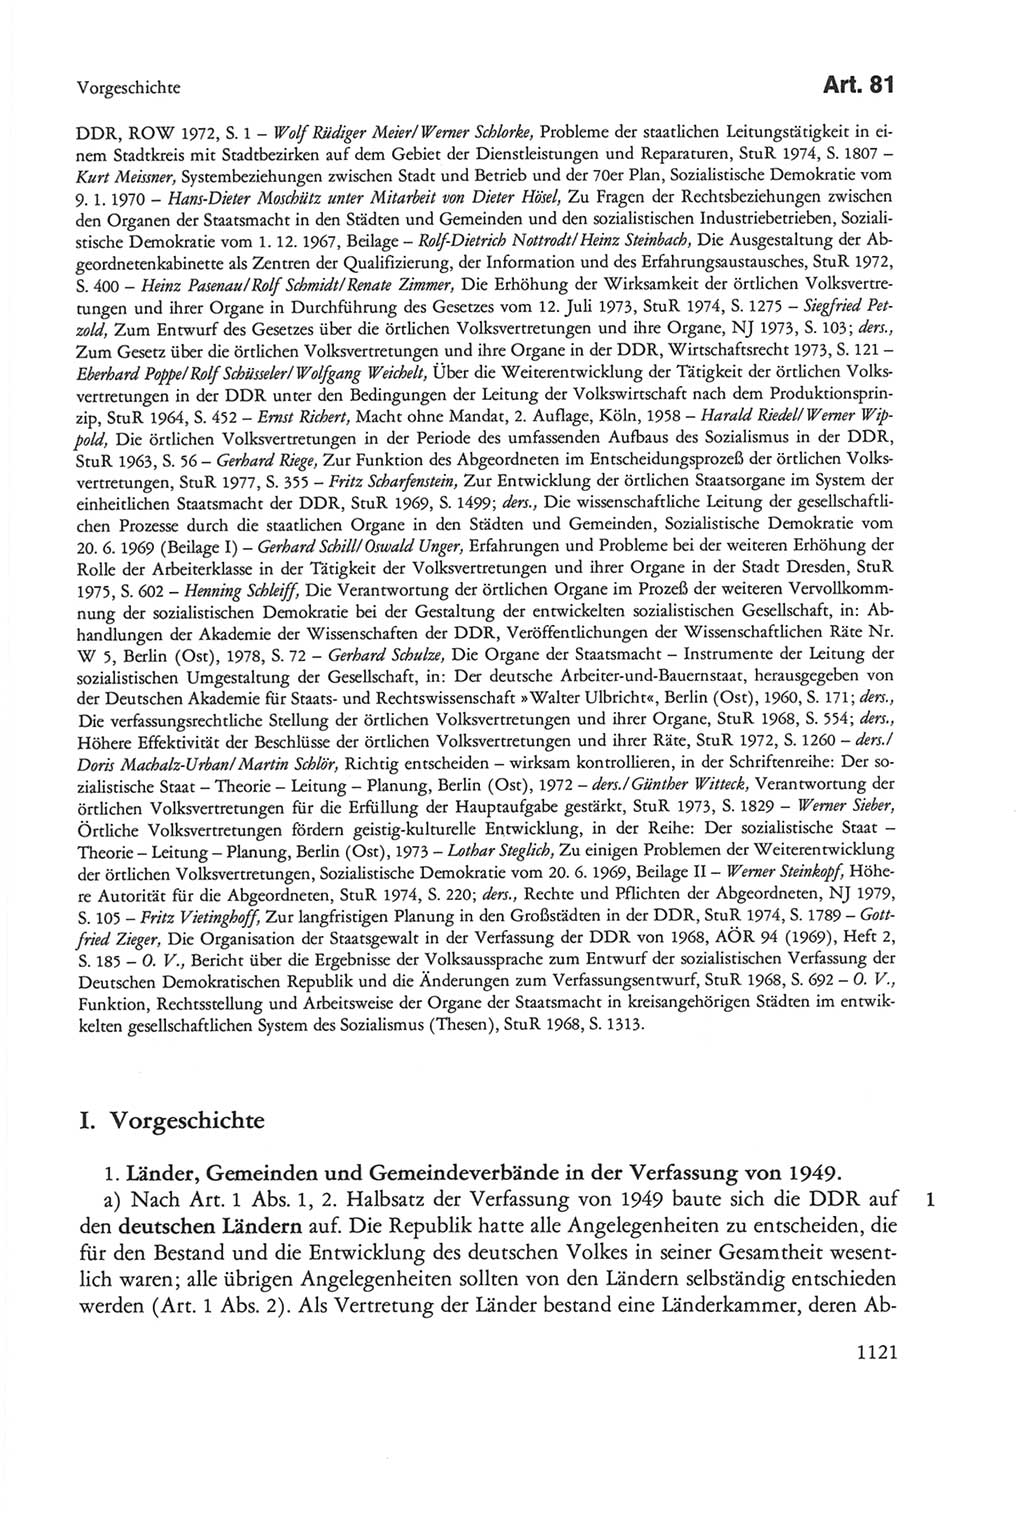 Die sozialistische Verfassung der Deutschen Demokratischen Republik (DDR), Kommentar mit einem Nachtrag 1997, Seite 1121 (Soz. Verf. DDR Komm. Nachtr. 1997, S. 1121)